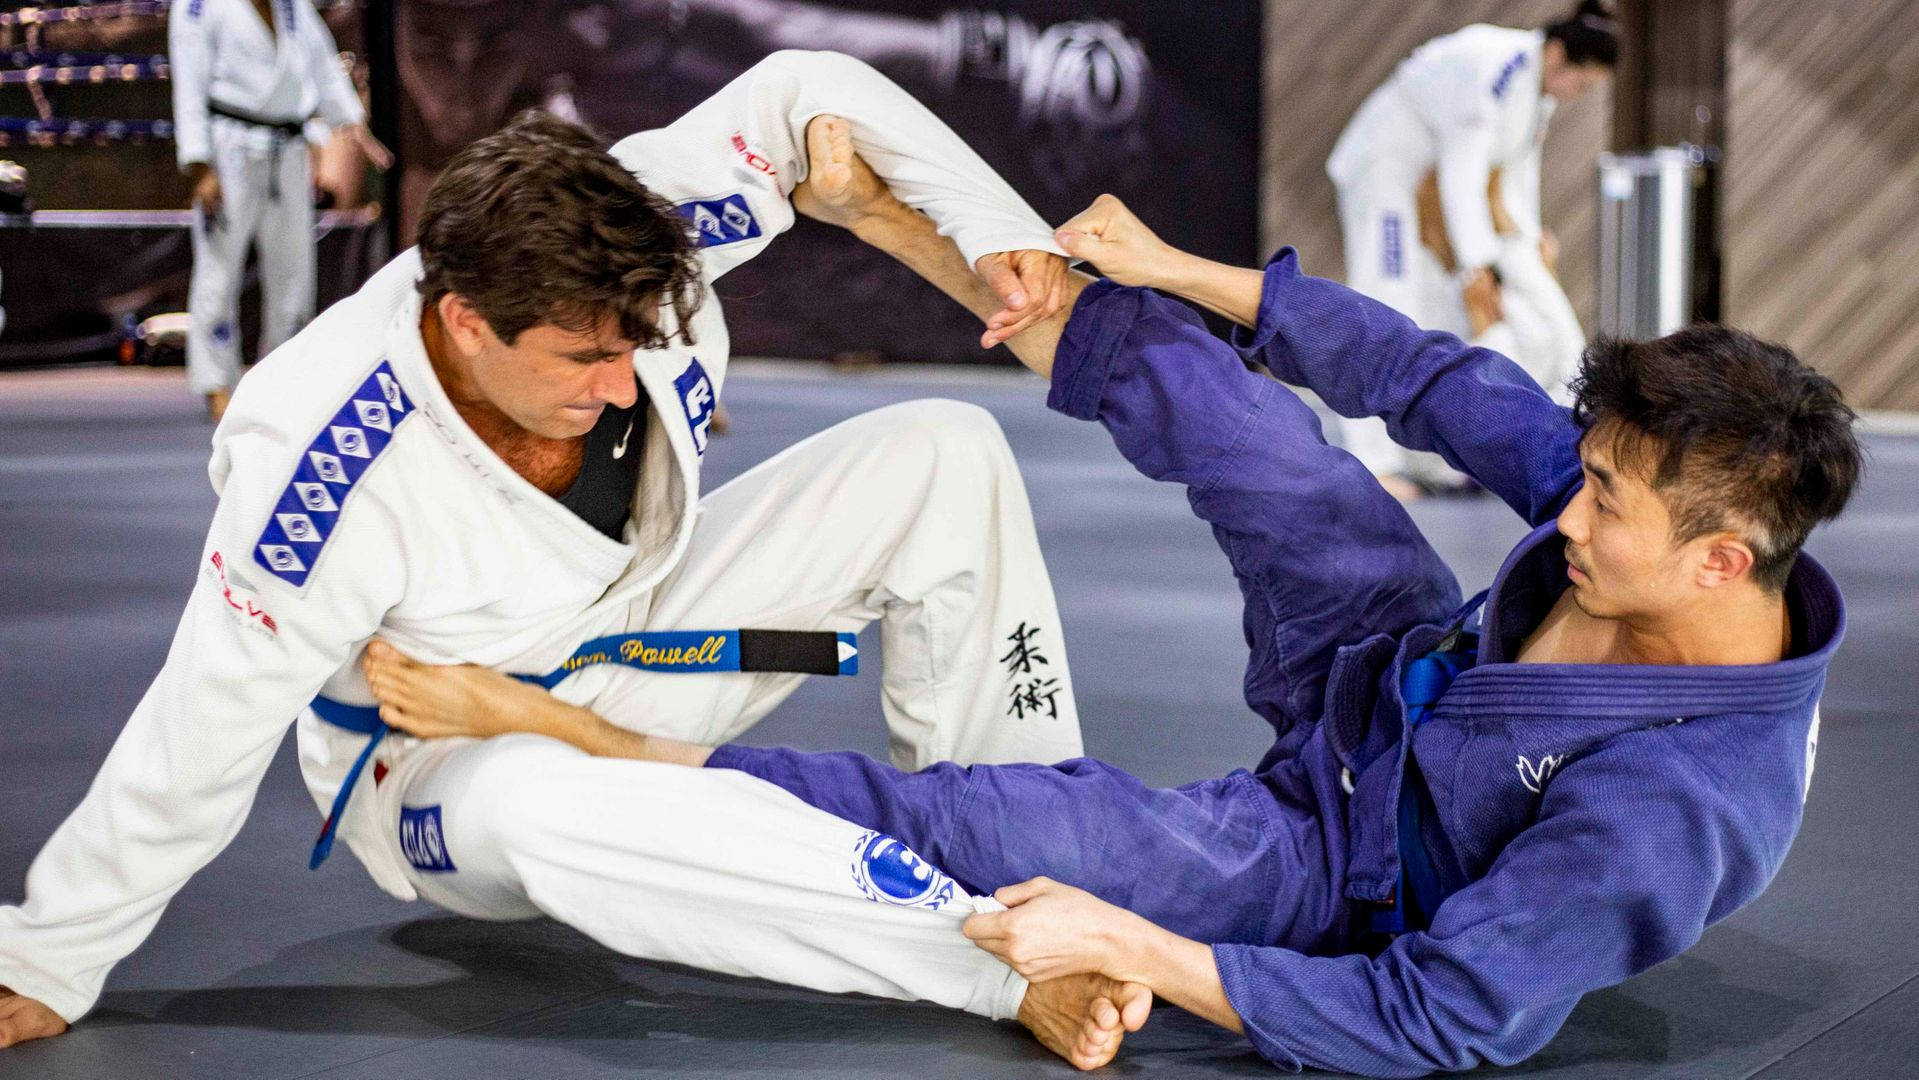 Brazilian Jiu-jitsu Grappling Fight Wallpaper